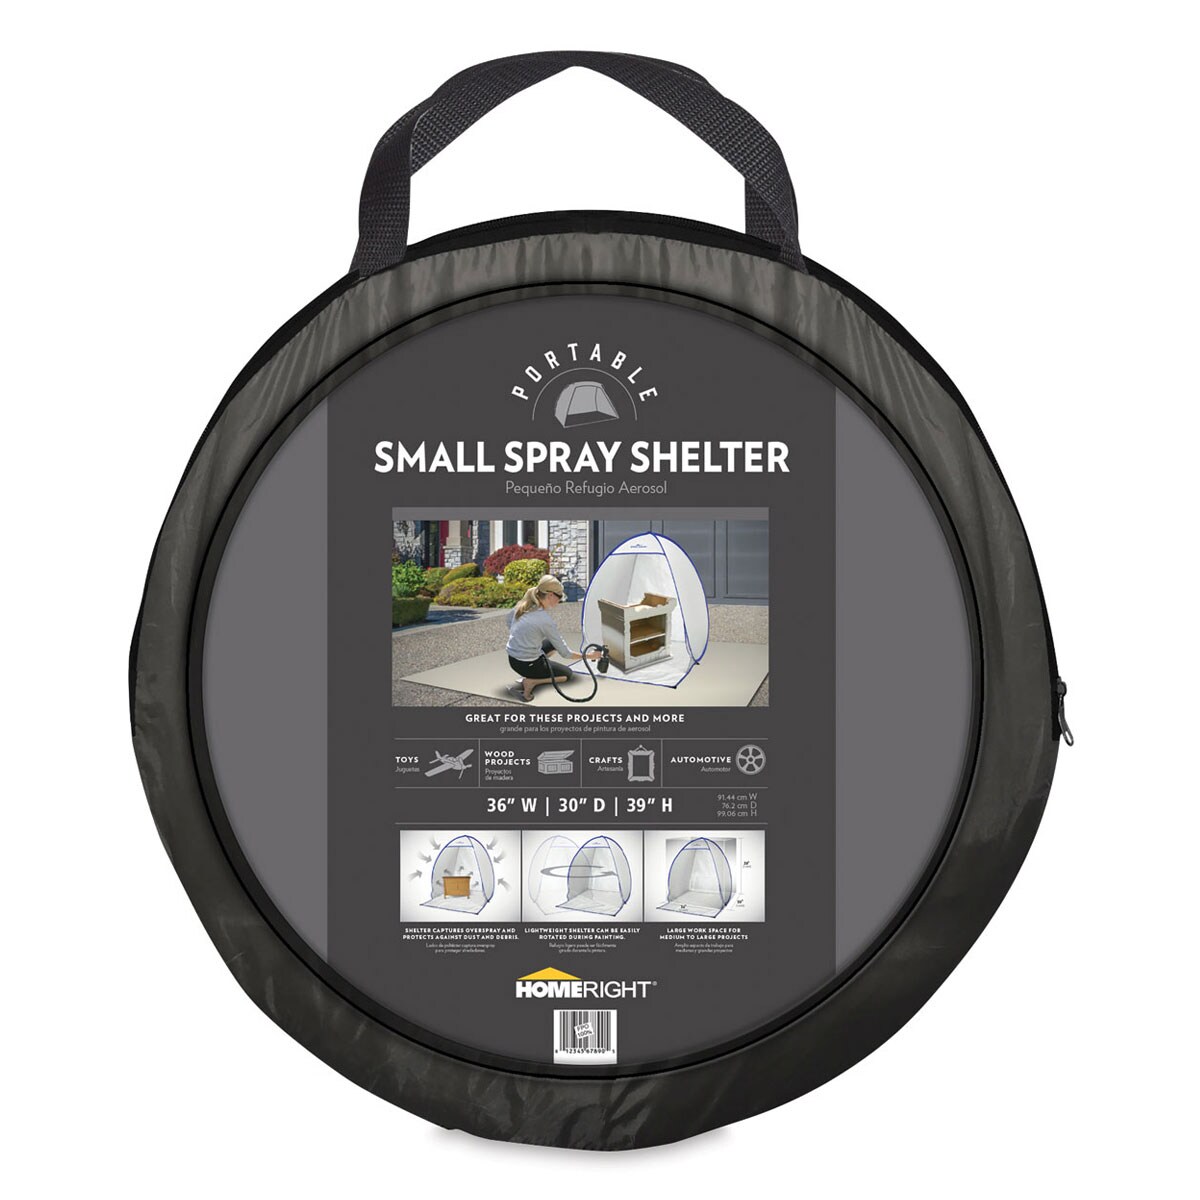 HomeRight Spray Shelter - Small